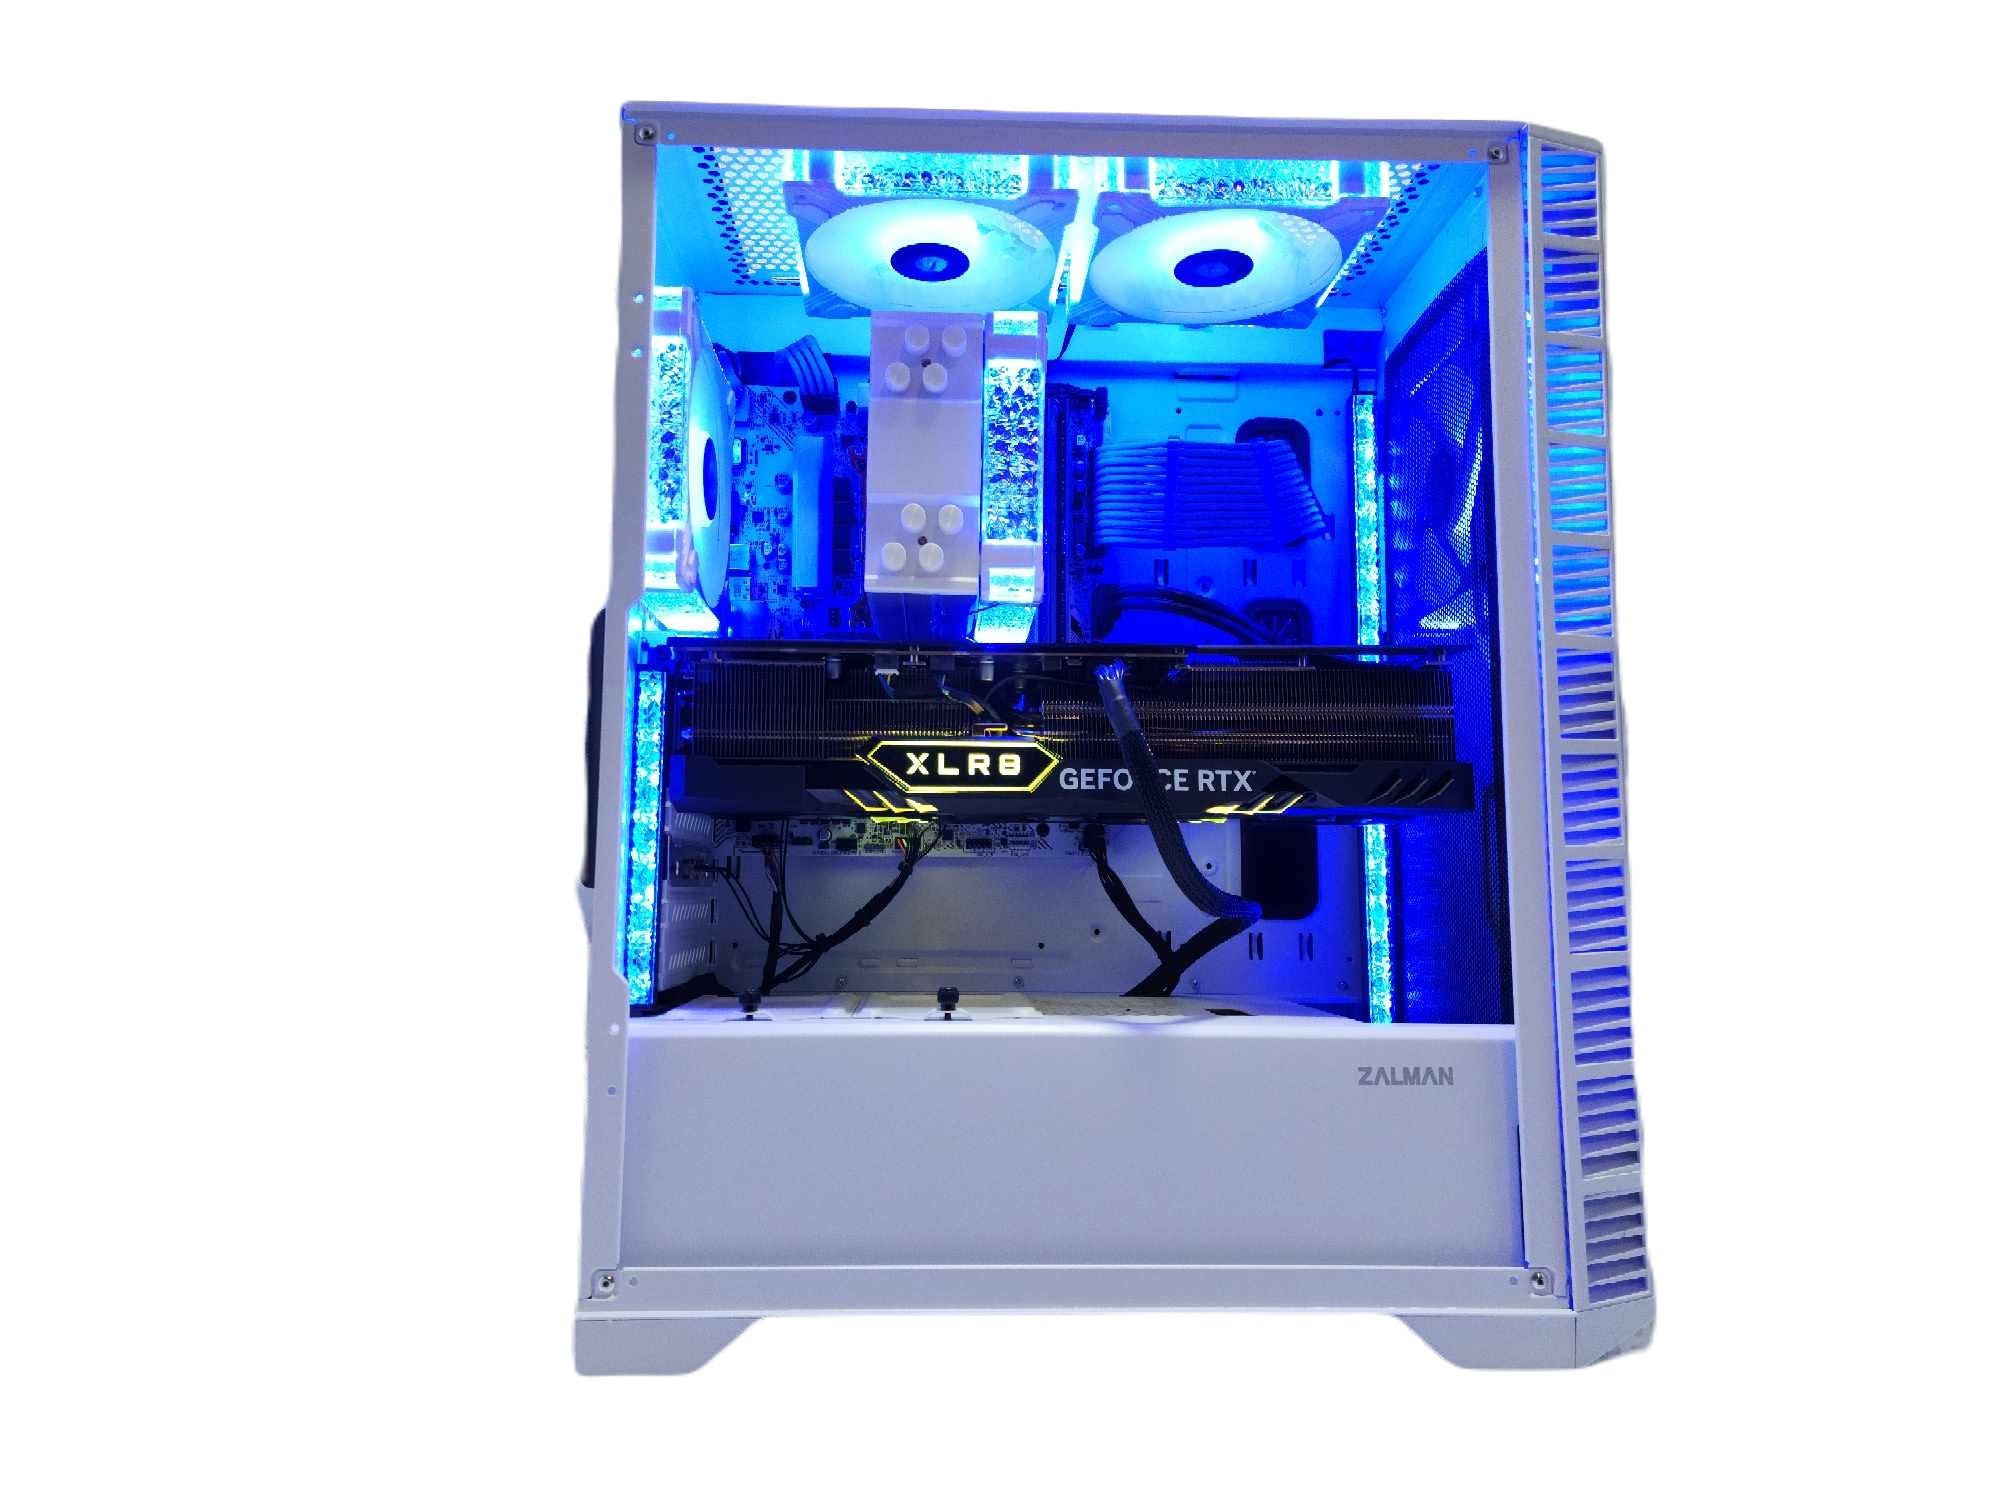 Laufey Core XIII Gaming PC Intel i7 NVIDIA RTX 4080 2TB + 2TB SSD 32GB DDR5 White RGB B760 - Geek Tech